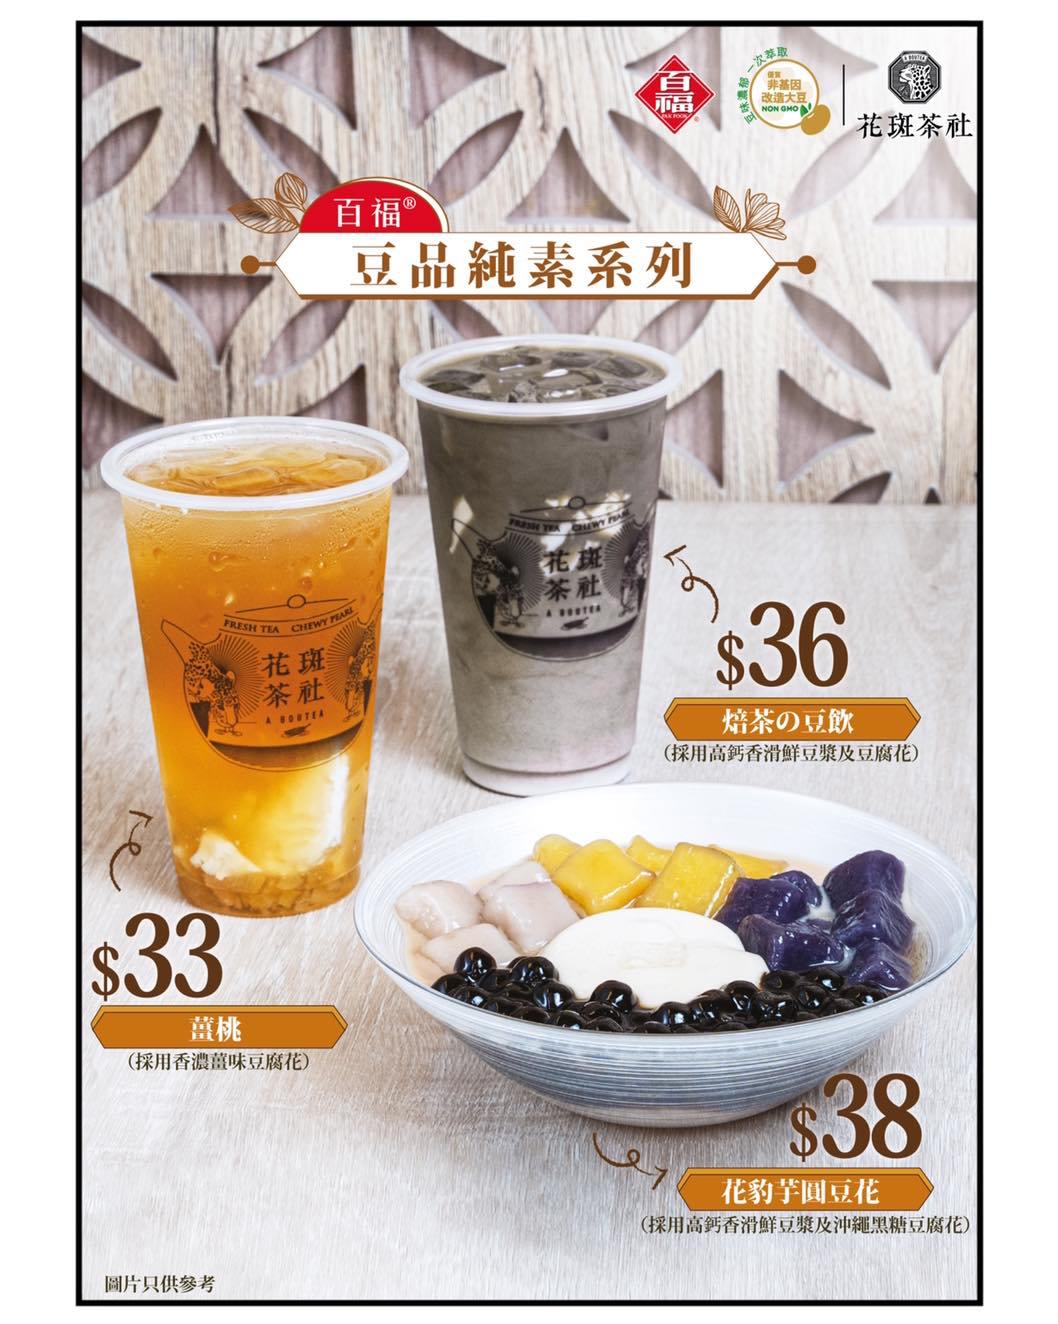 花斑茶社的特許經營香港區加盟店項目10